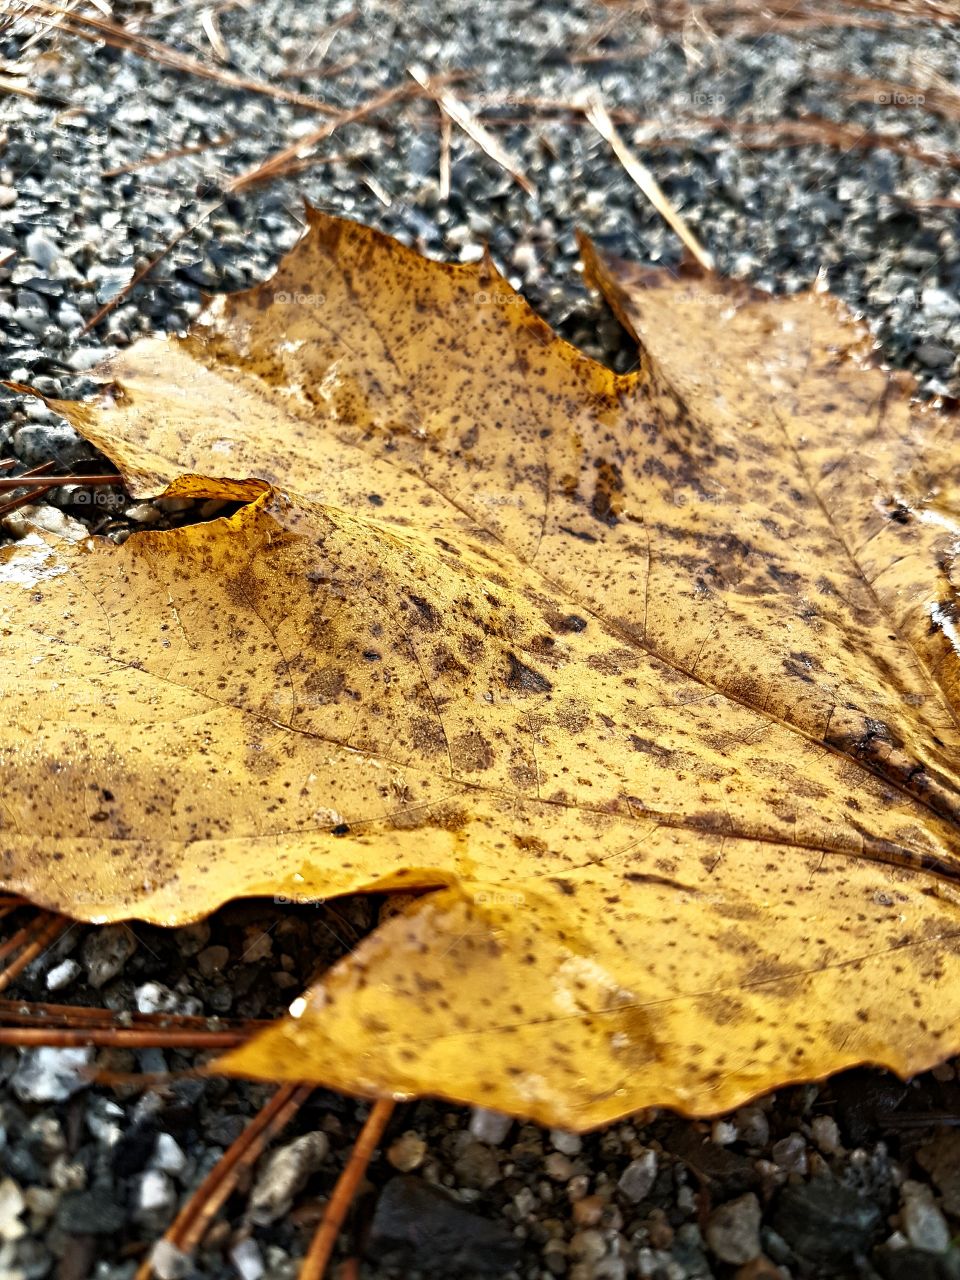 Macro Maple Leaf